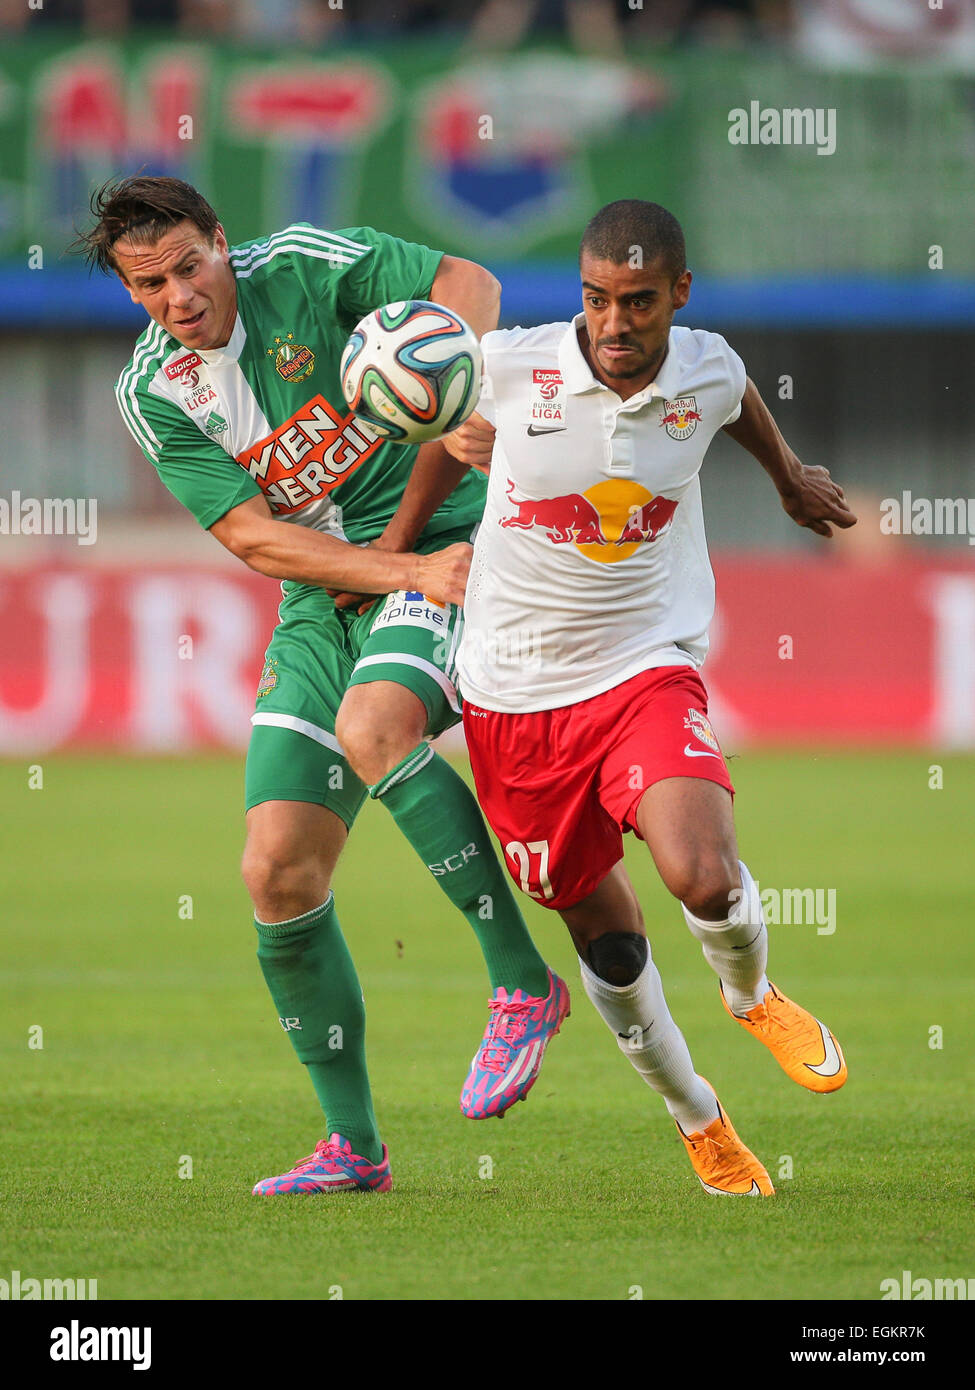 Vienne, Autriche - 28 septembre 2014 : Alan (# 27 Salzbourg) et Stefan Schwab (# 8) Rapide pour lutter contre la balle dans un soccer autrichienne Banque D'Images